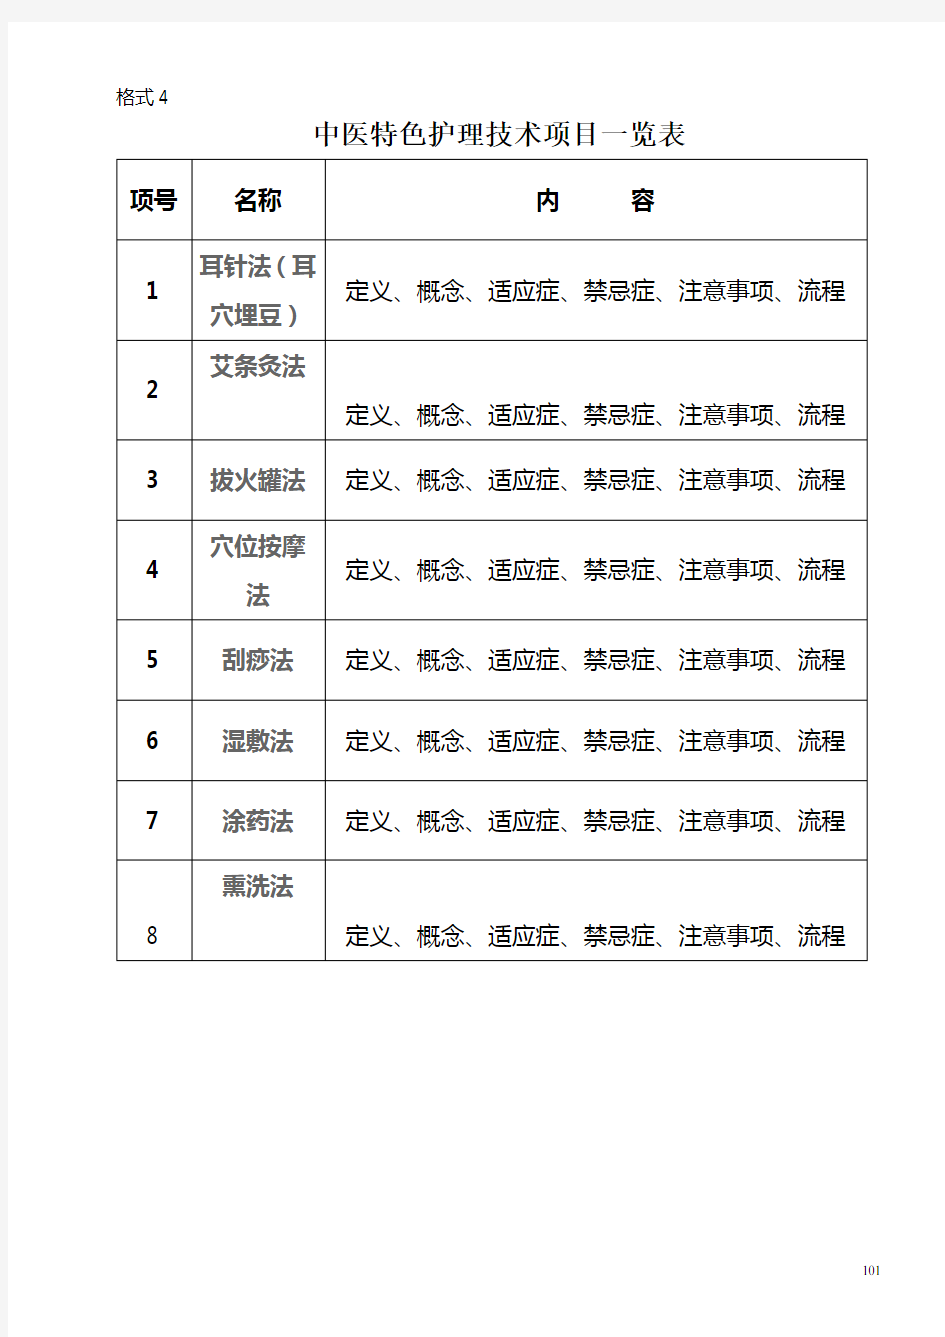 中医特色护理技术项目一览表